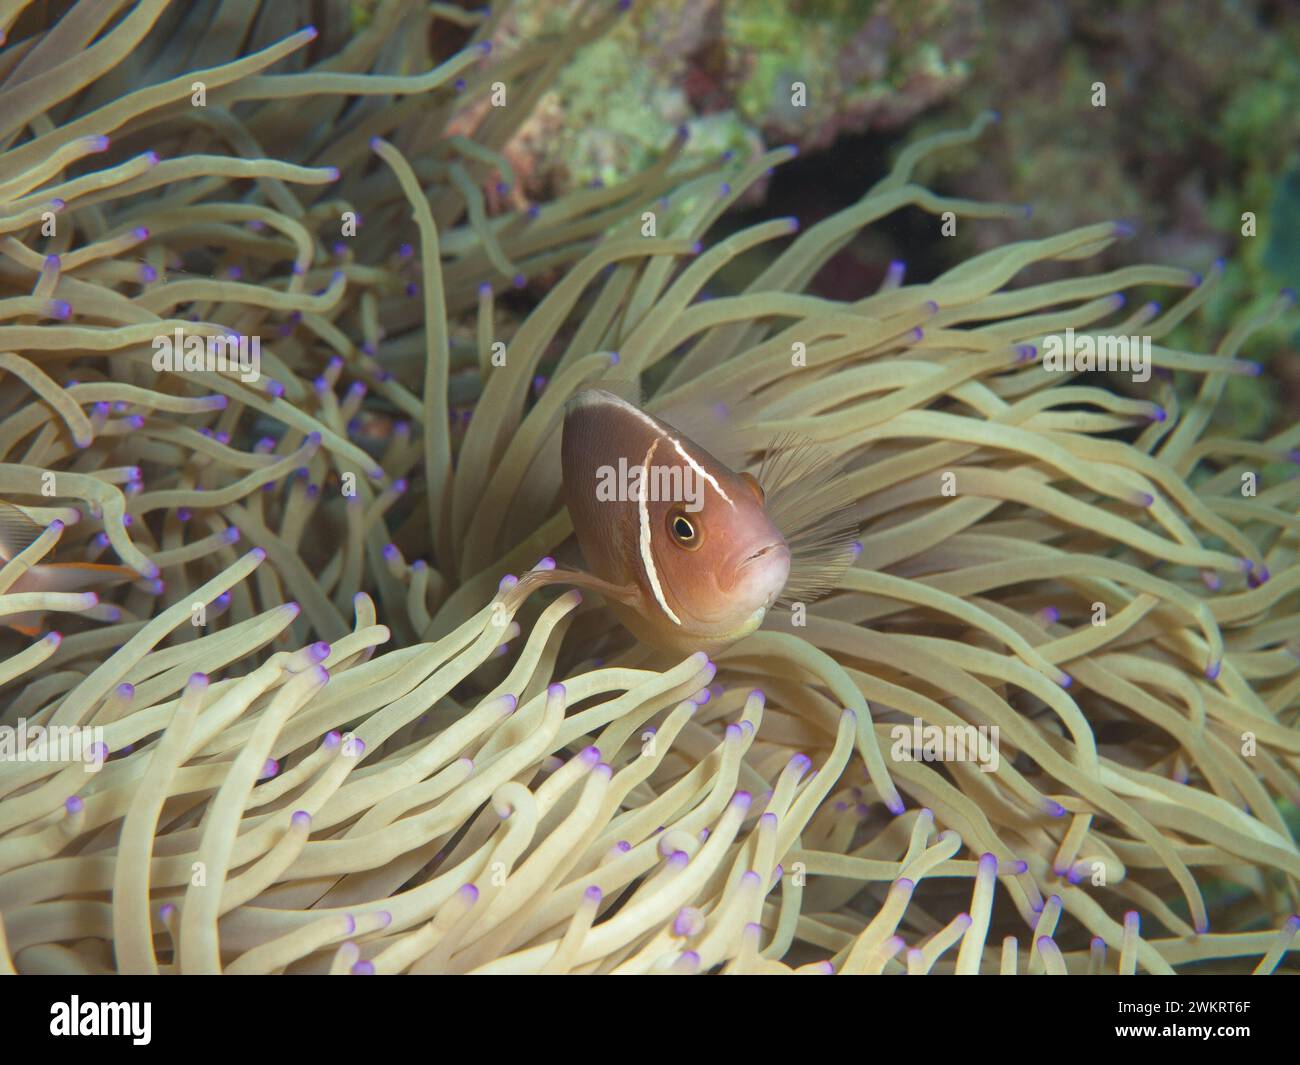 Anemonefish sont toujours en mouvement : le poisson-clown regarde curieusement hors de son anémone. Photographie sous-marine : un récif corallien à Moalboal, Cebu, Philippines. Banque D'Images